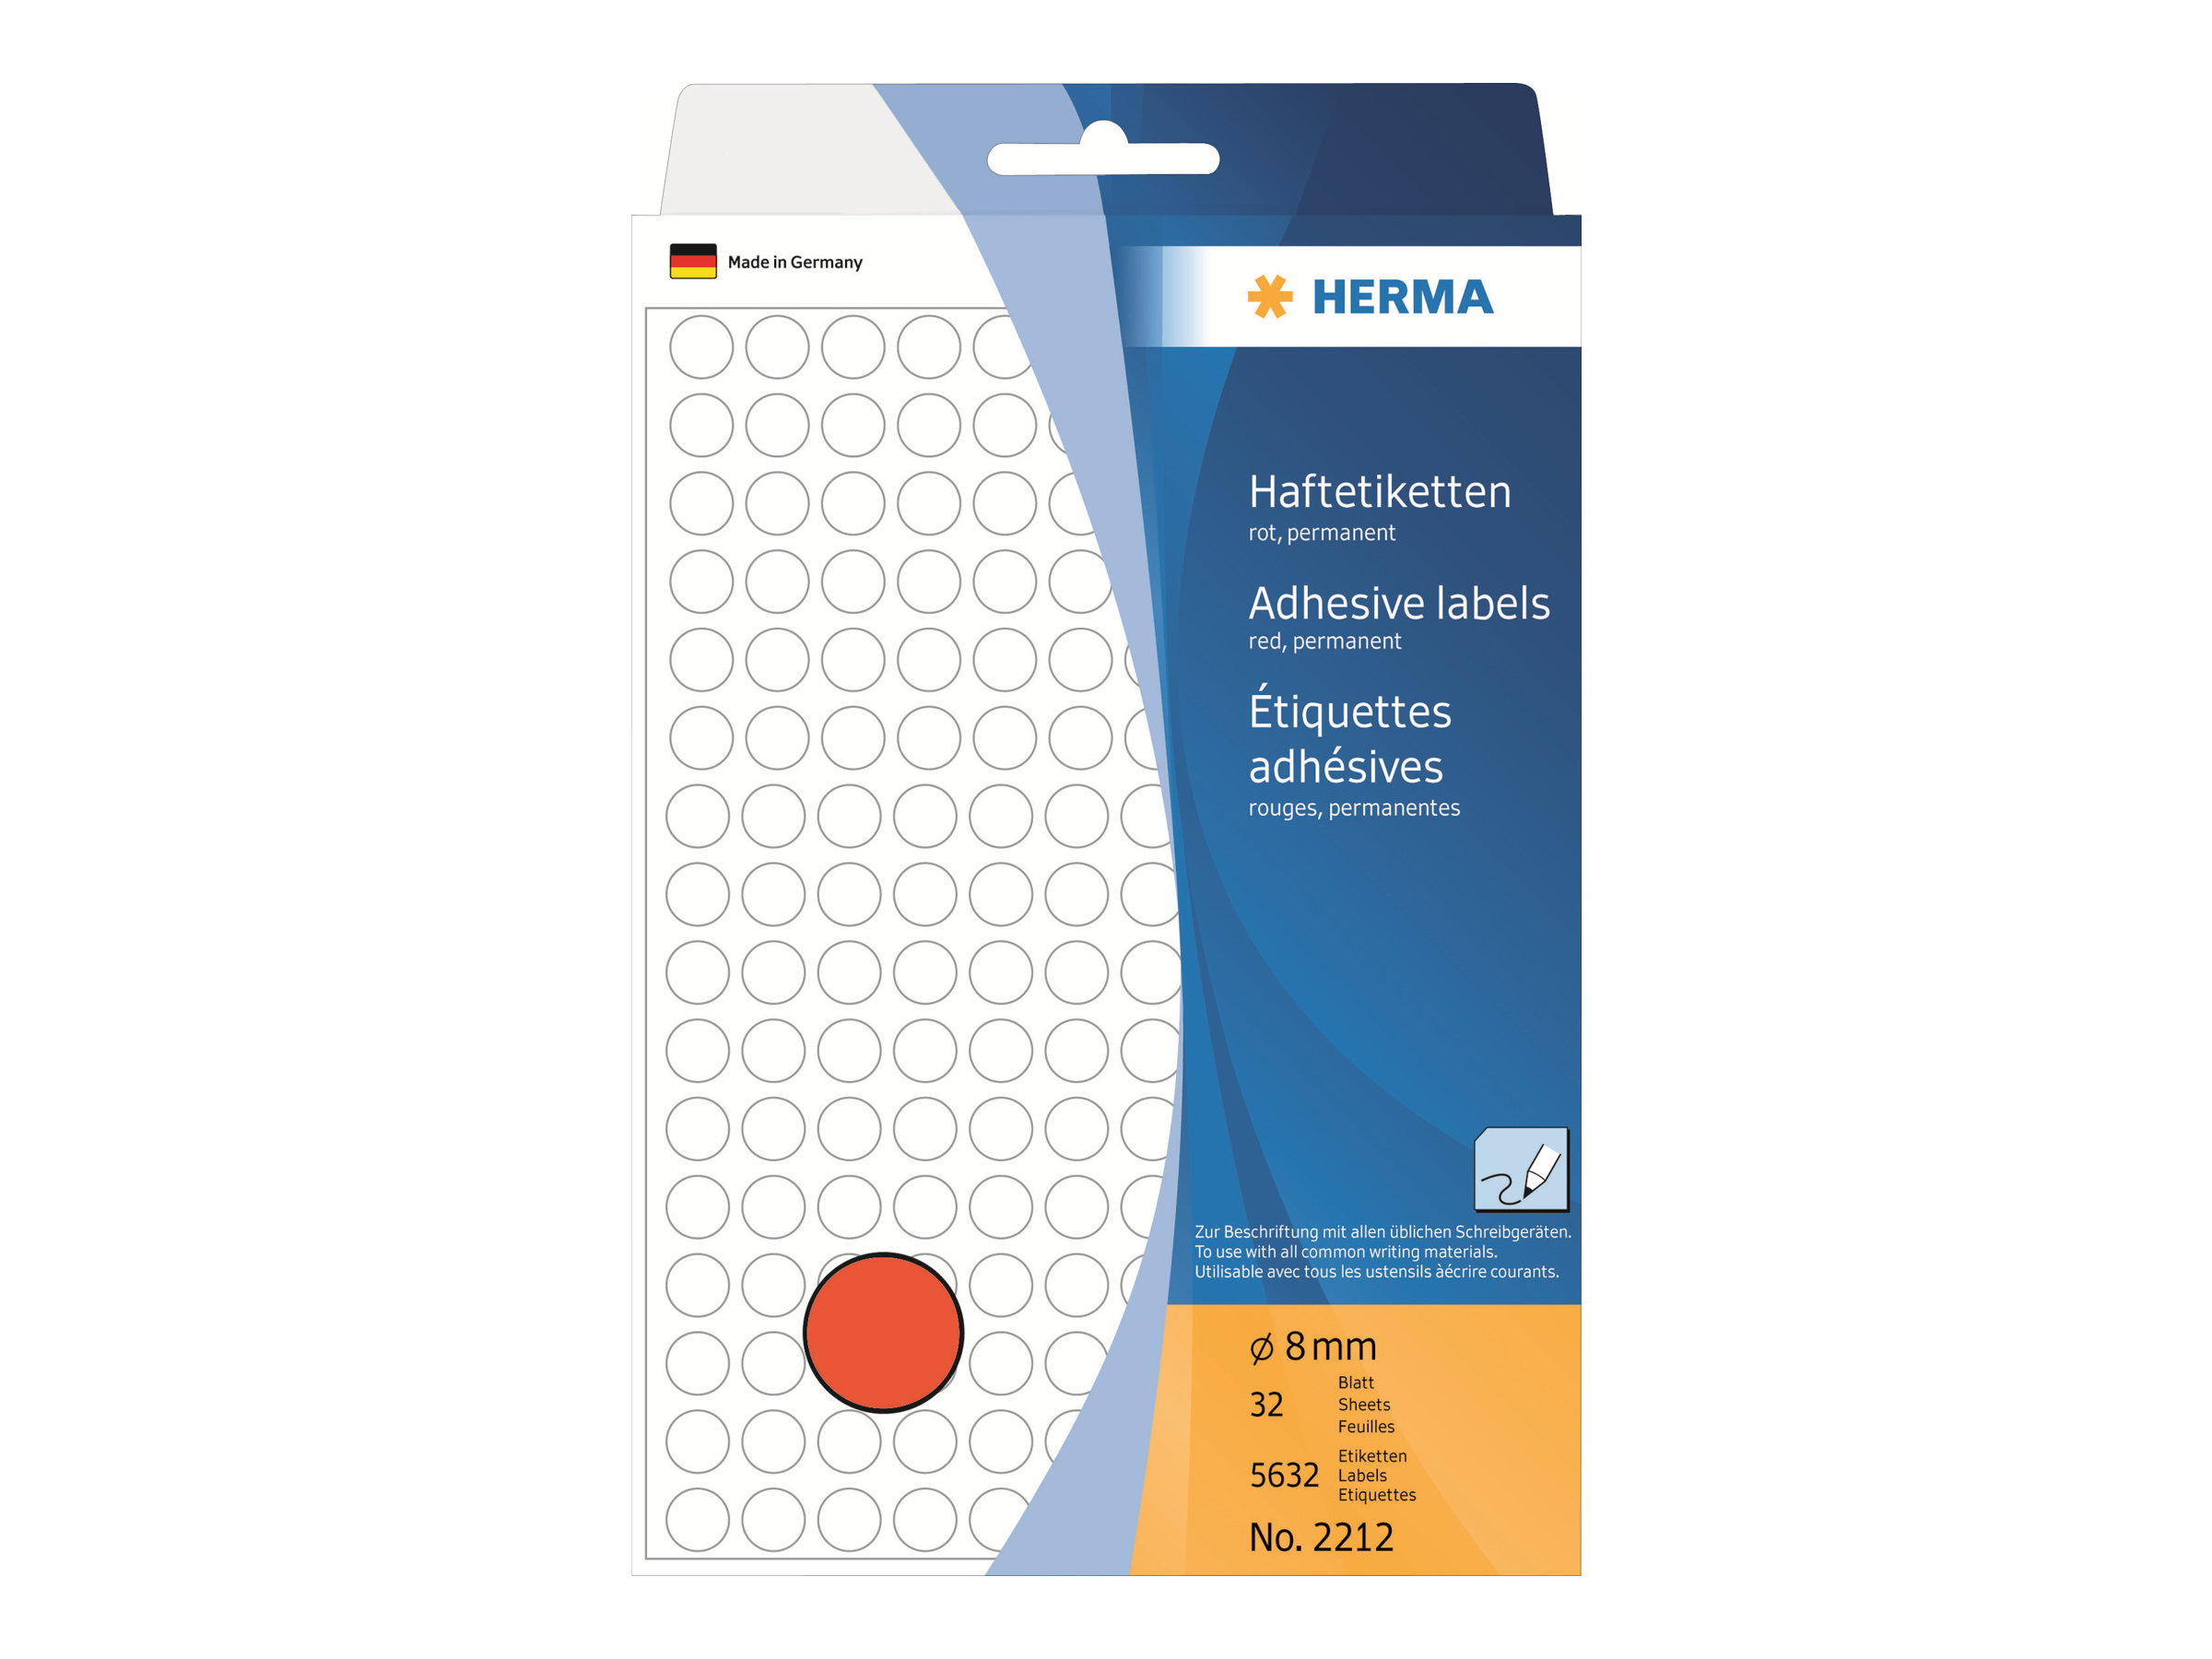 HERMA Permanenter Klebstoff - Rot - 8 mm rund 5632 Etikett(en) (32 Bogen x 176)